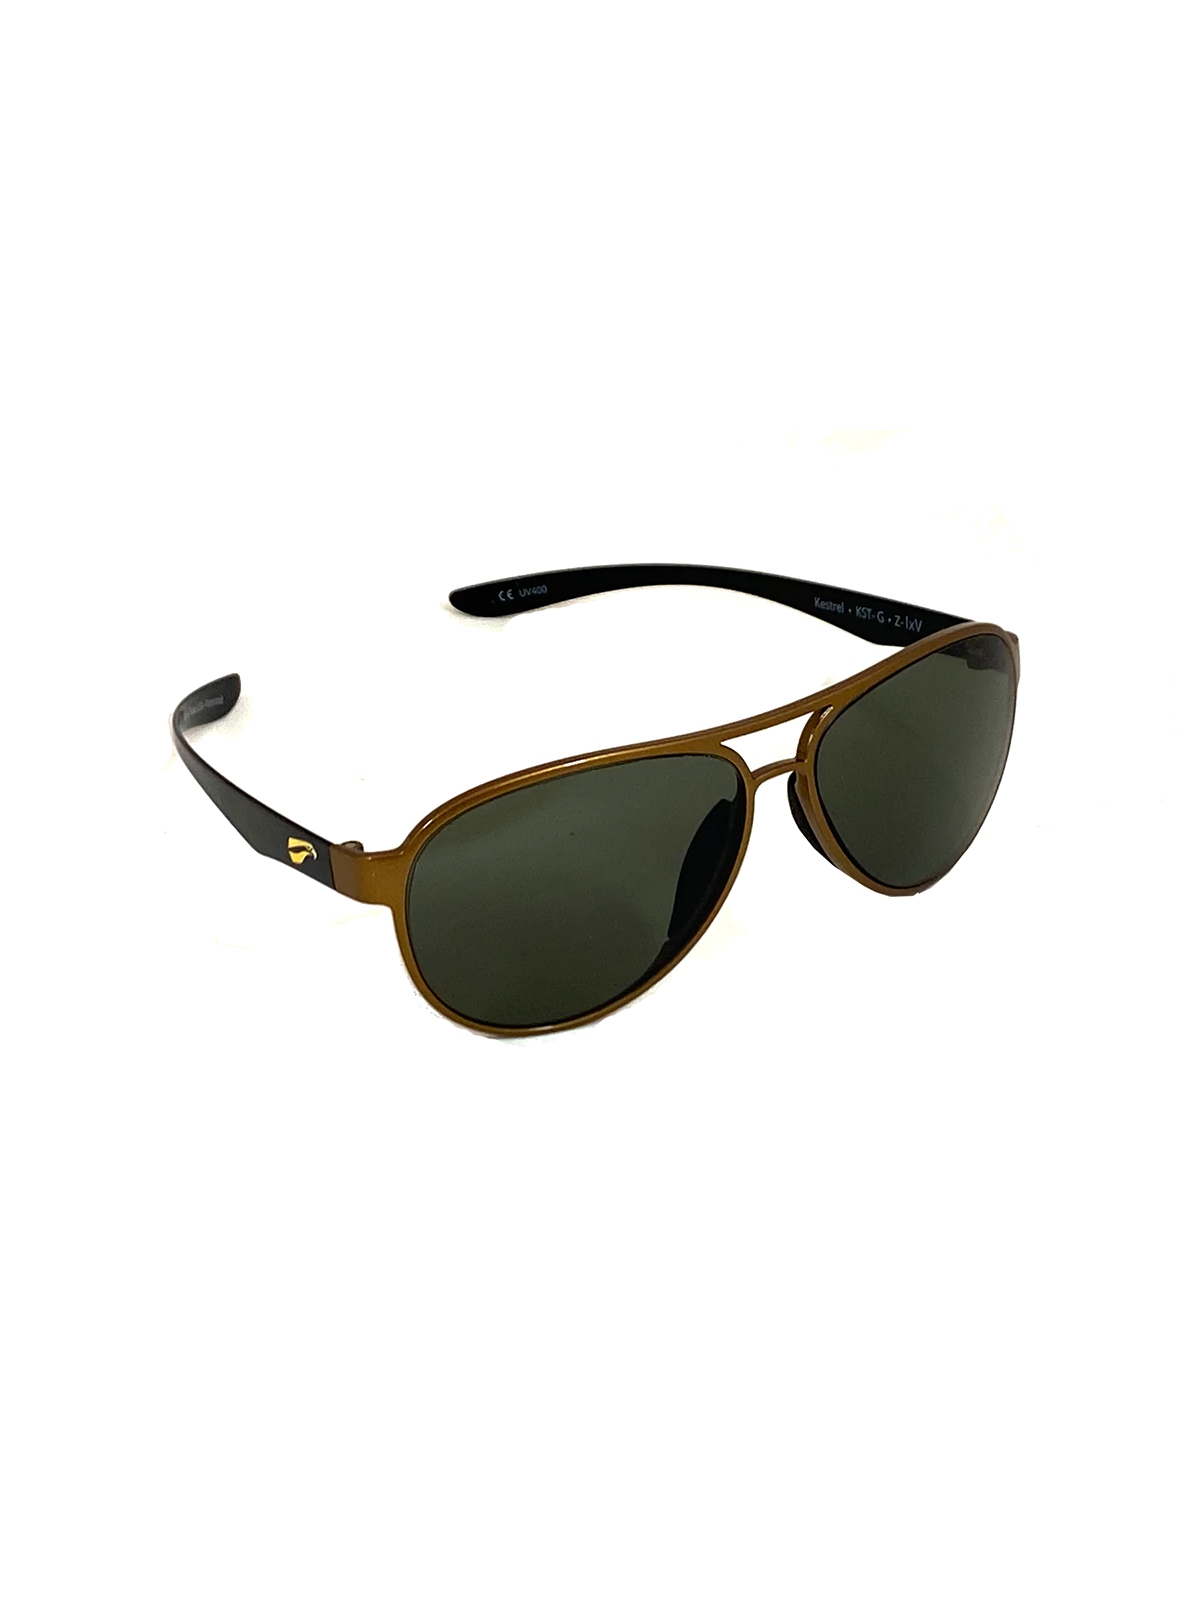 Flying Eyes Sonnenbrille Kestrel Aviator - Rahmen goldfarben mit schwarzen Bügeln, Linsen G15 (neutrales Grün)